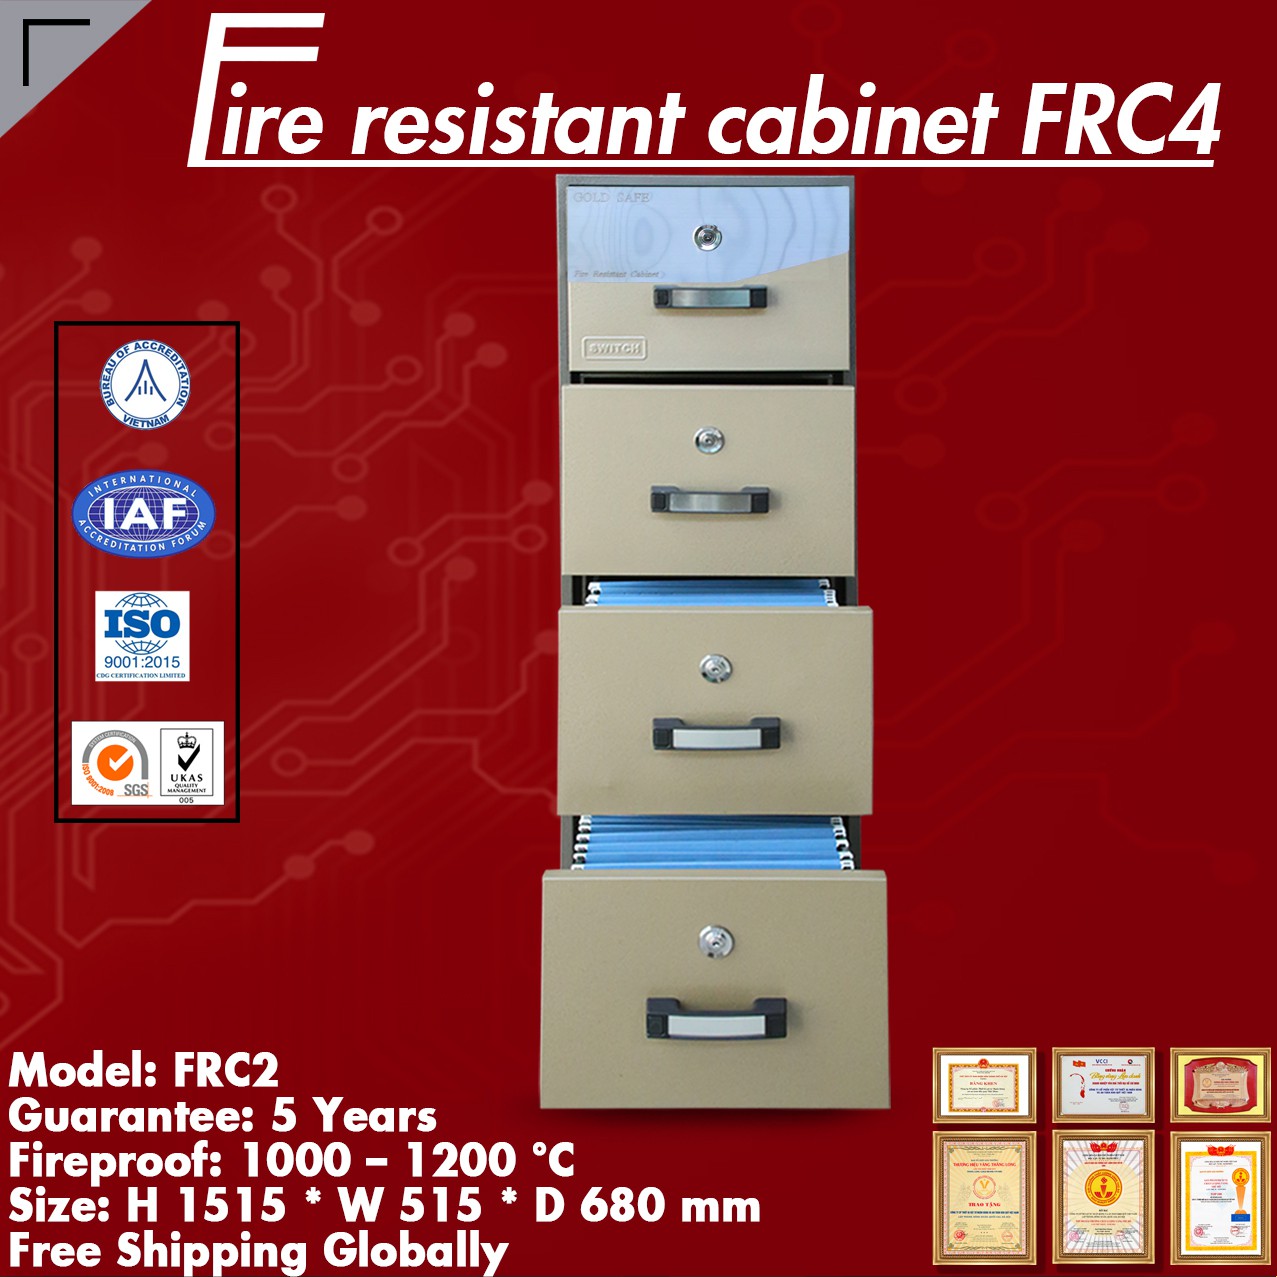 Đại Lý Uỷ Quyền Tủ Sắt Chống Cháy WELKO FRC4